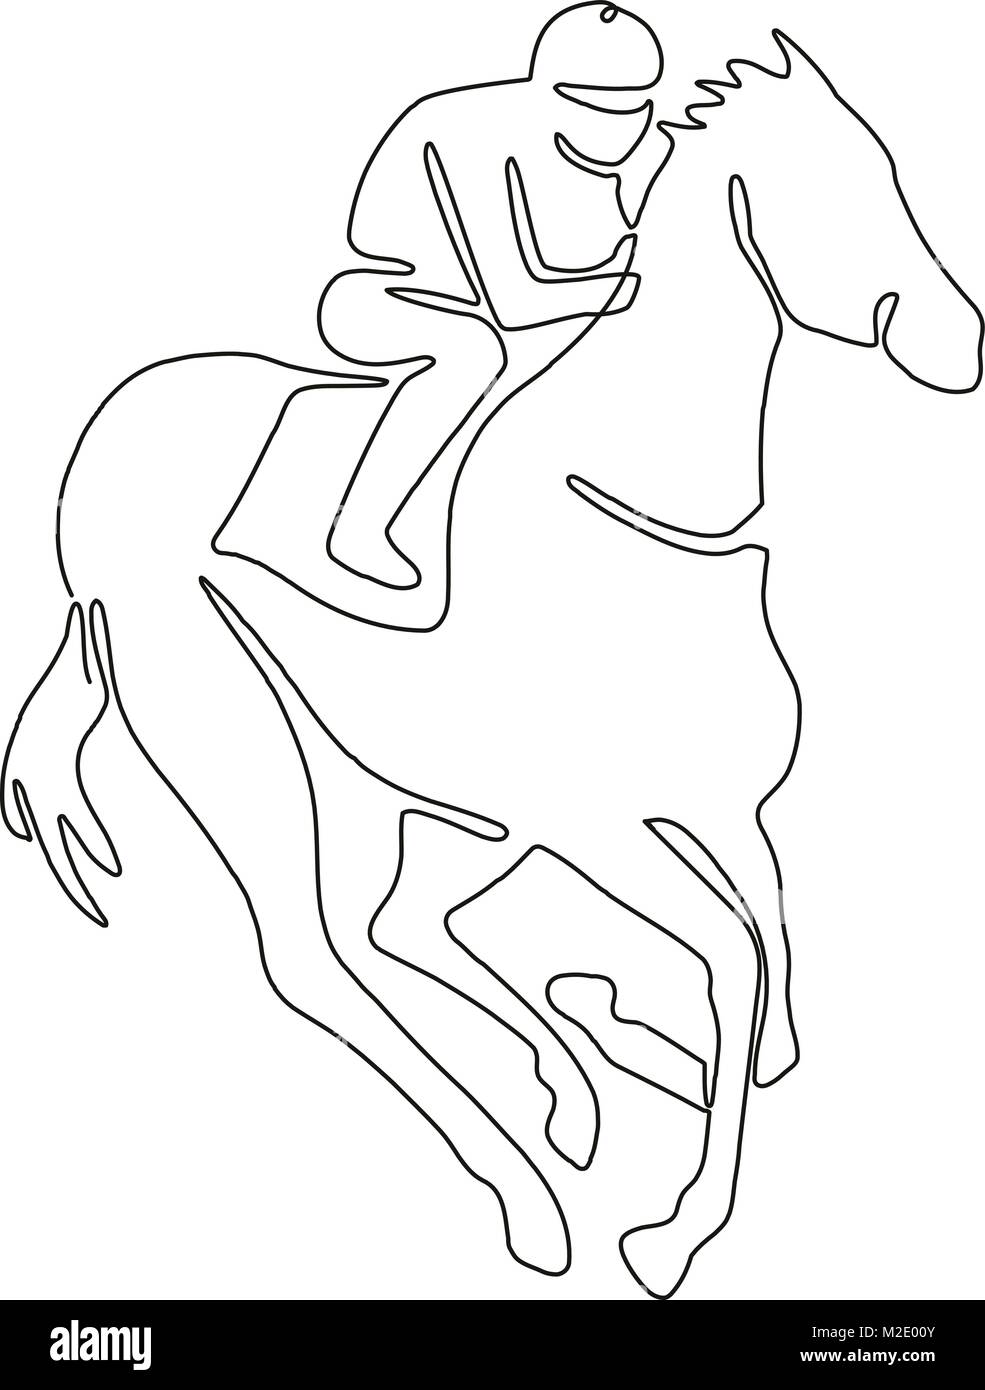 Dibujo De Línea Continua Ilustración De Un Jockey En Carreras De